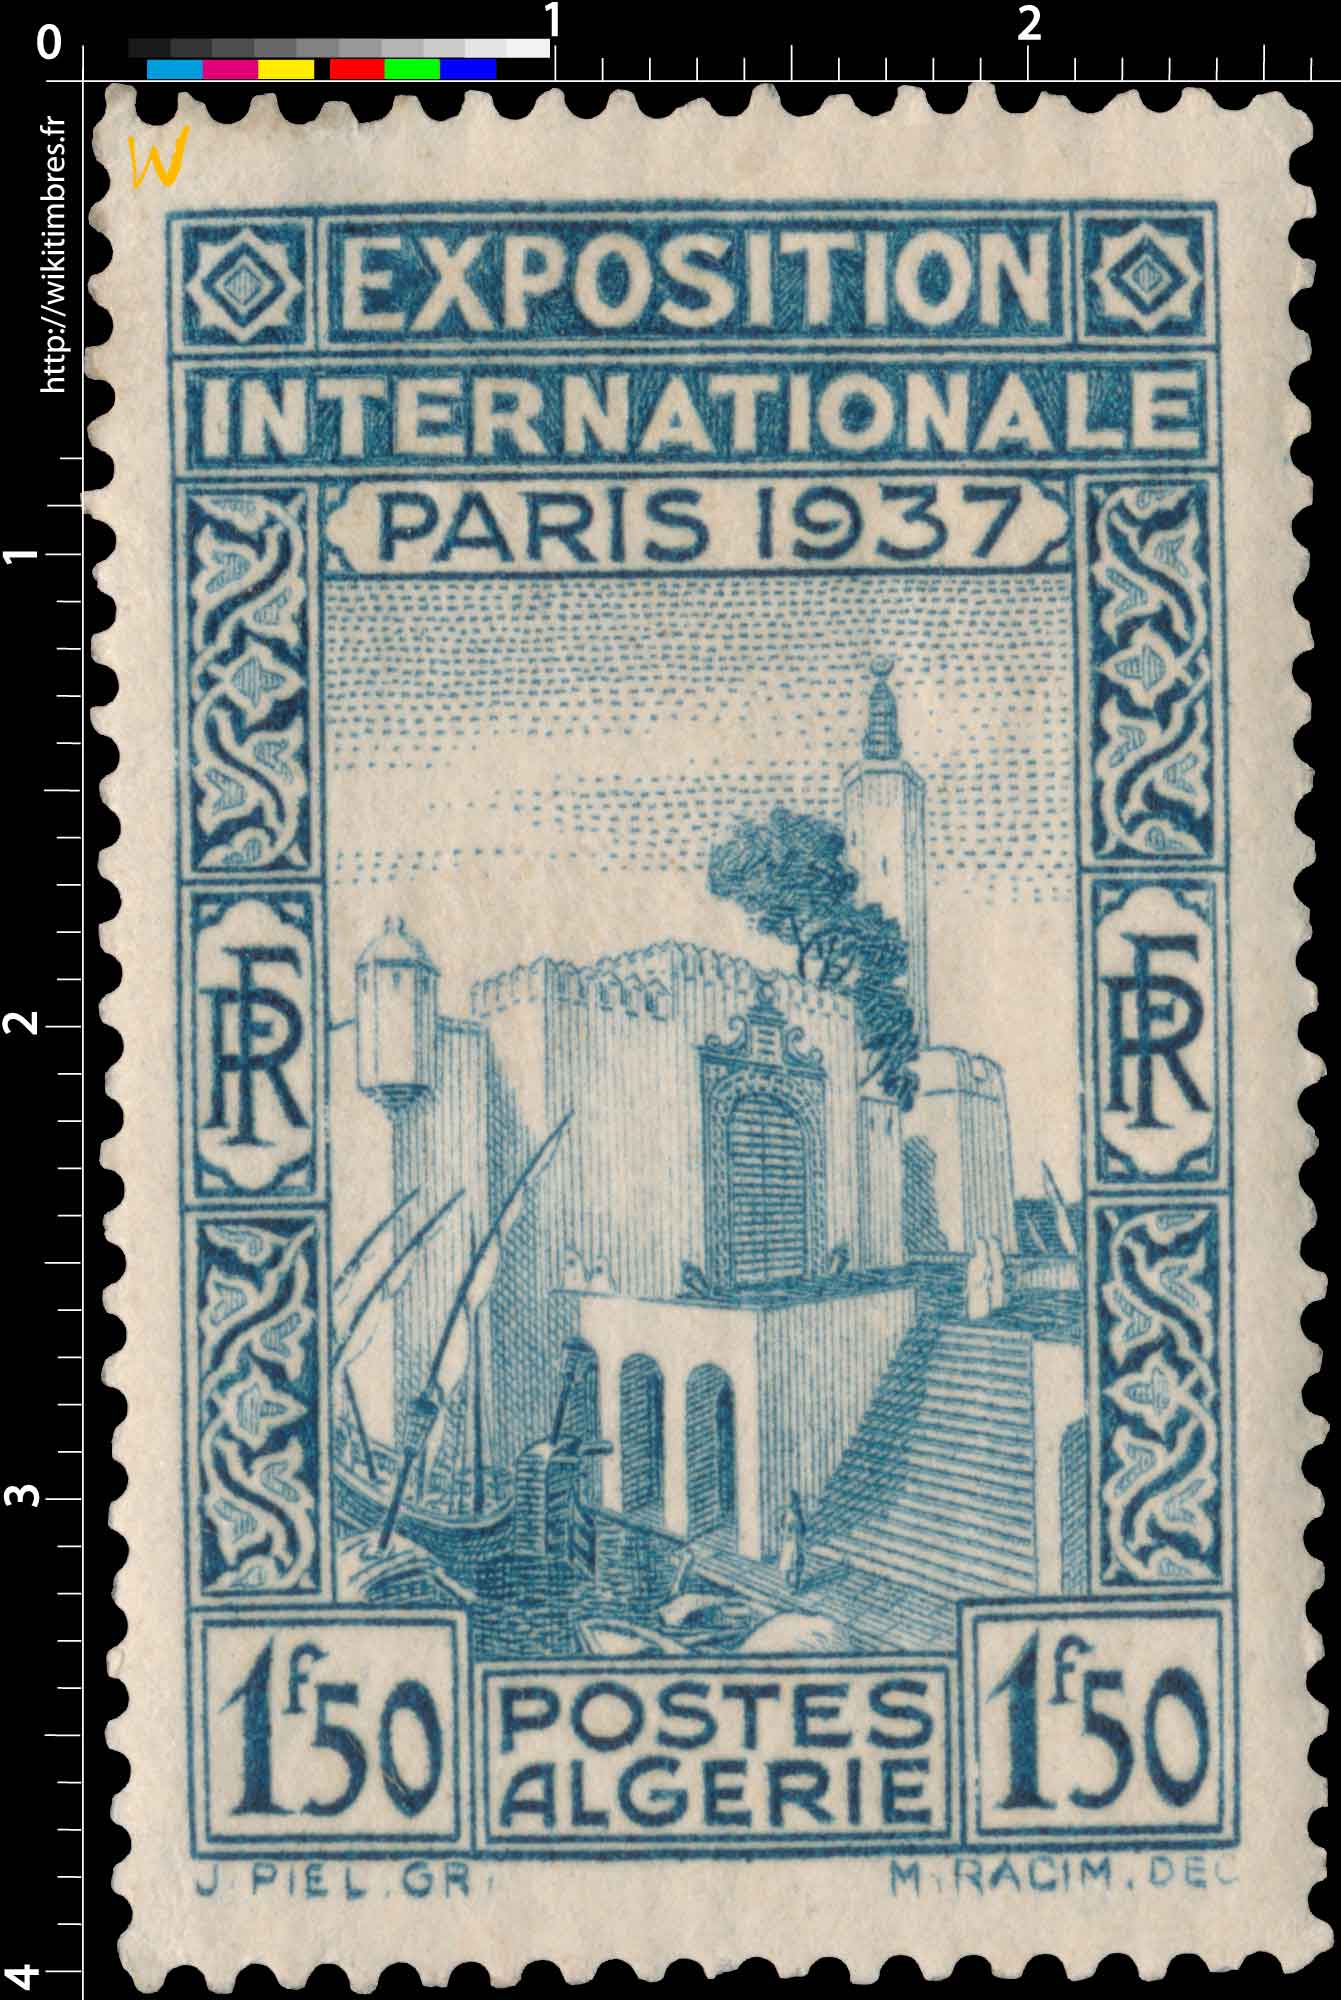 Algérie - Exposition internationale Paris 1937